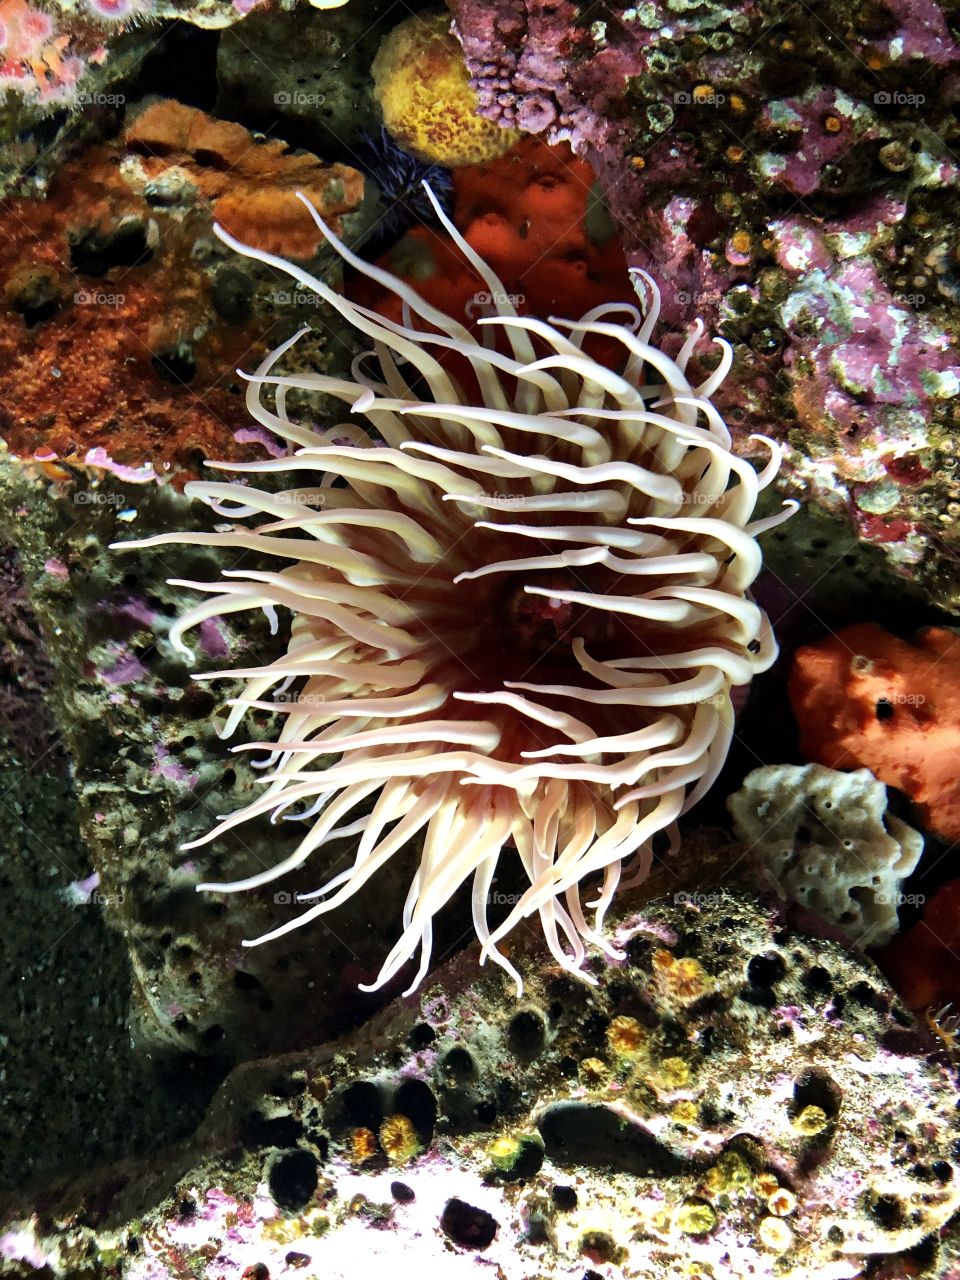 Sea life/Sea Anemone from Monterey Aquarium CA 